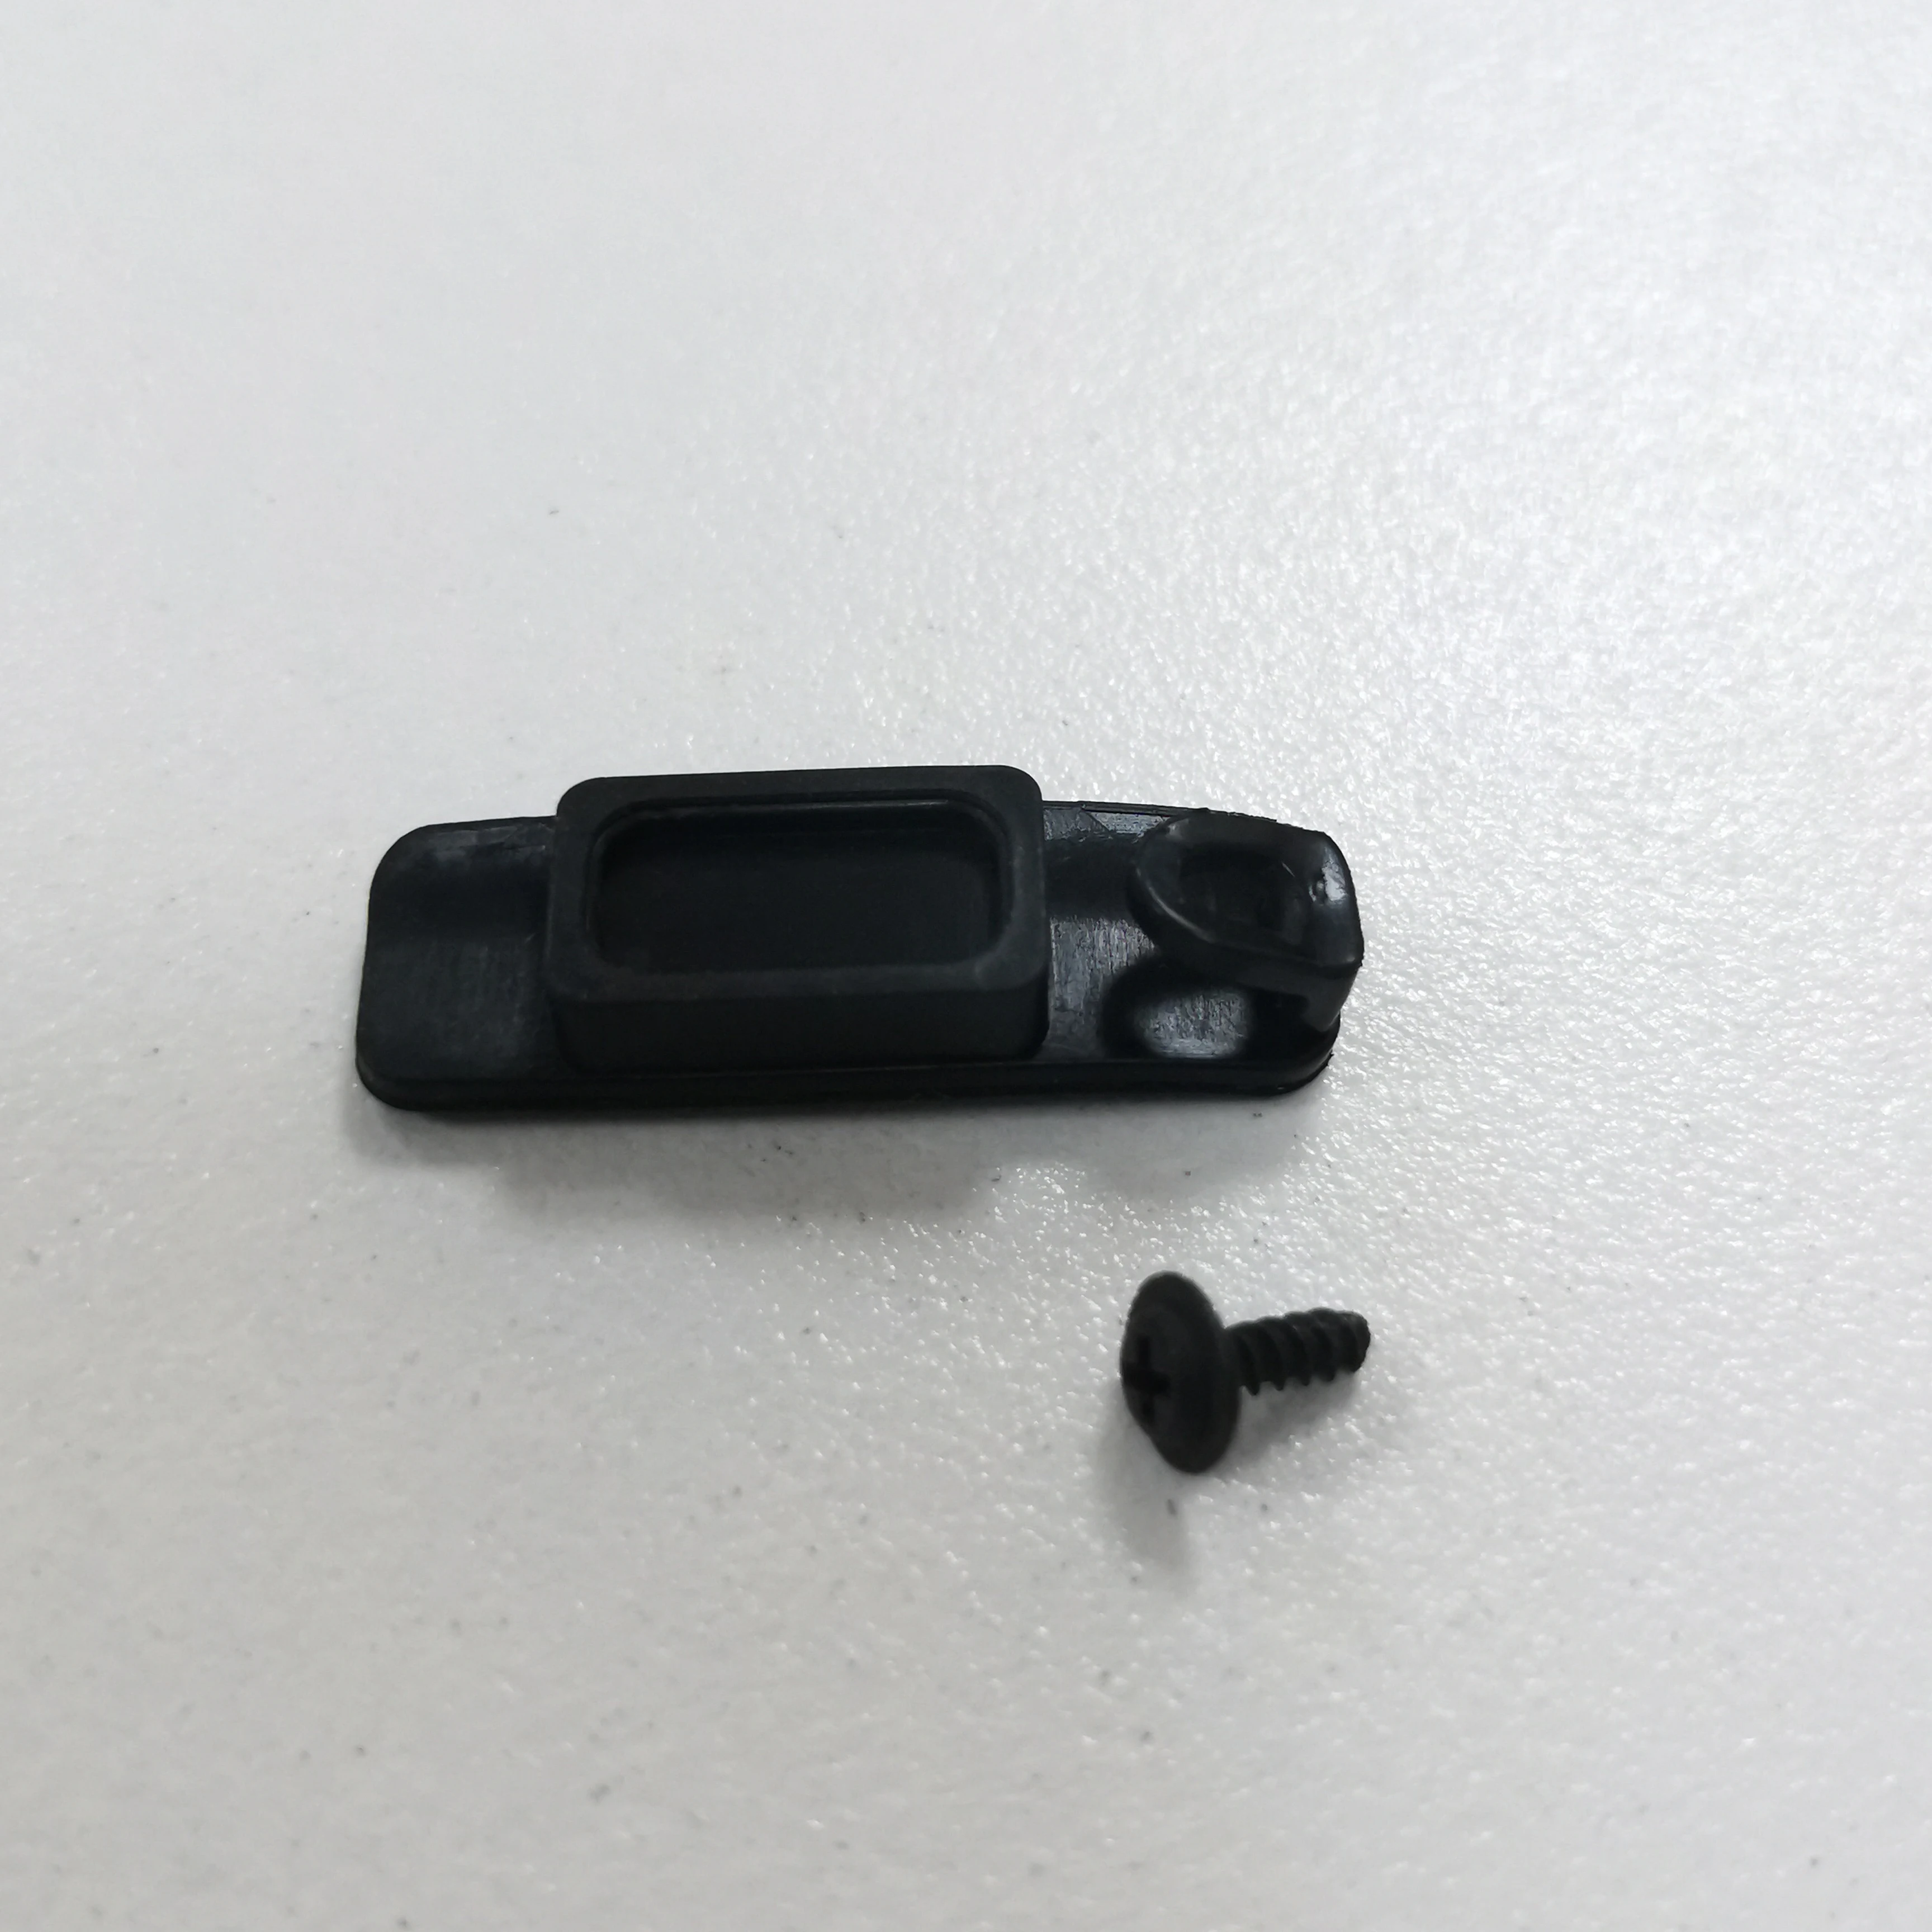 For Garmin Edge 820 USB-Gummi Cover Vandtæt Knappen Skrue Oprindelige Aldring Reparation Udskiftning